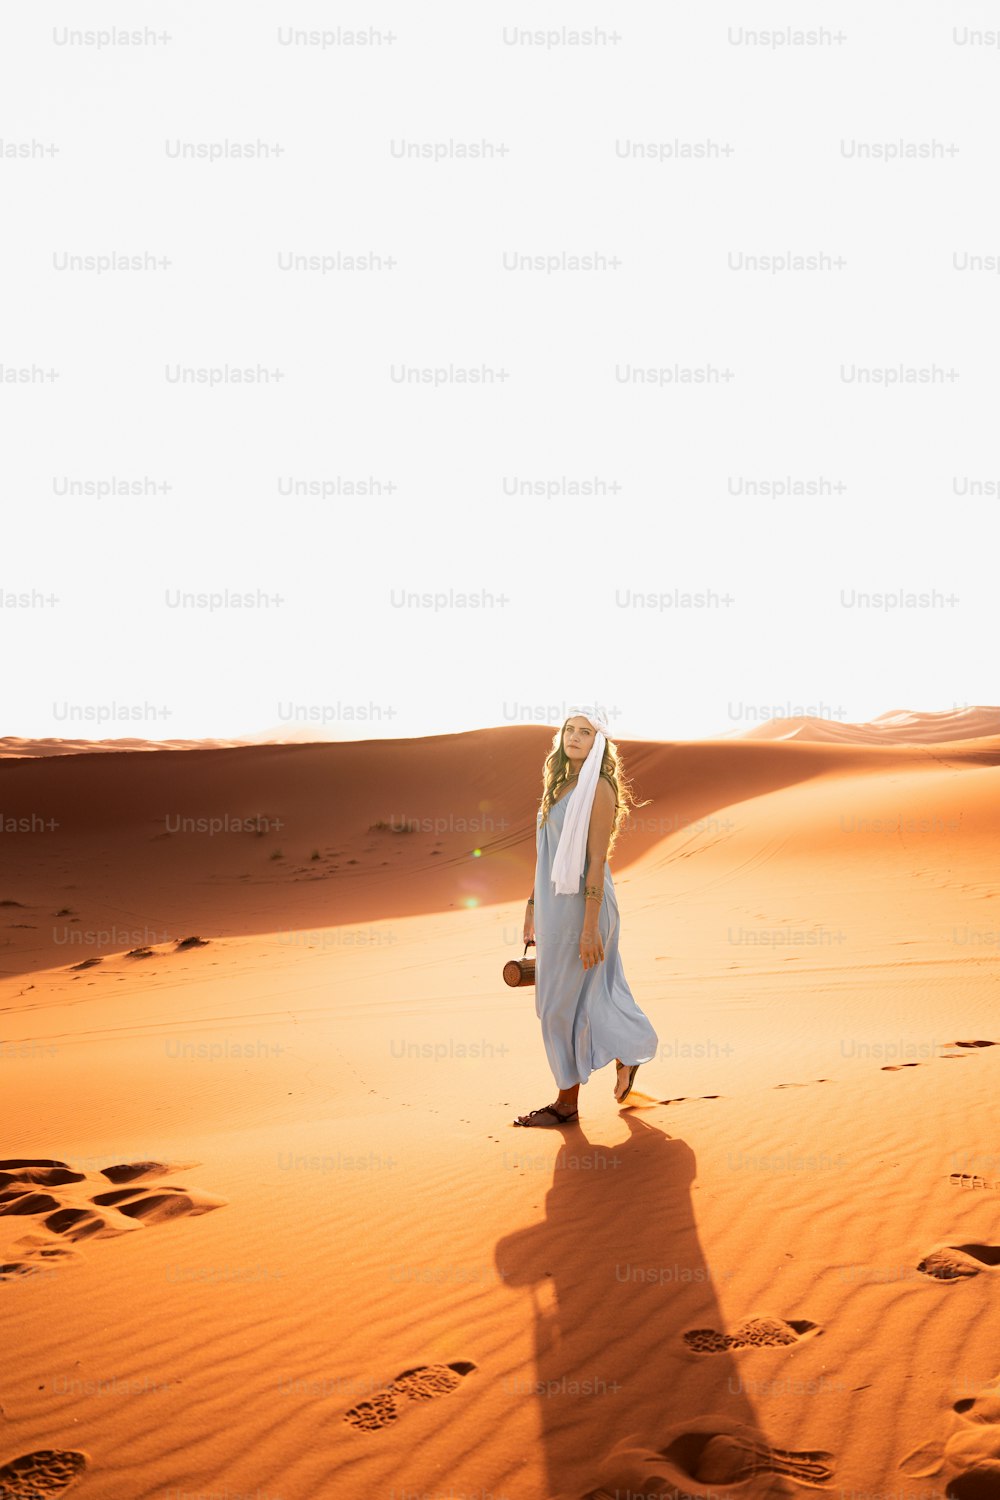 흰 드레스를 입은 여자가 사막을 가로질러 걷고 있다